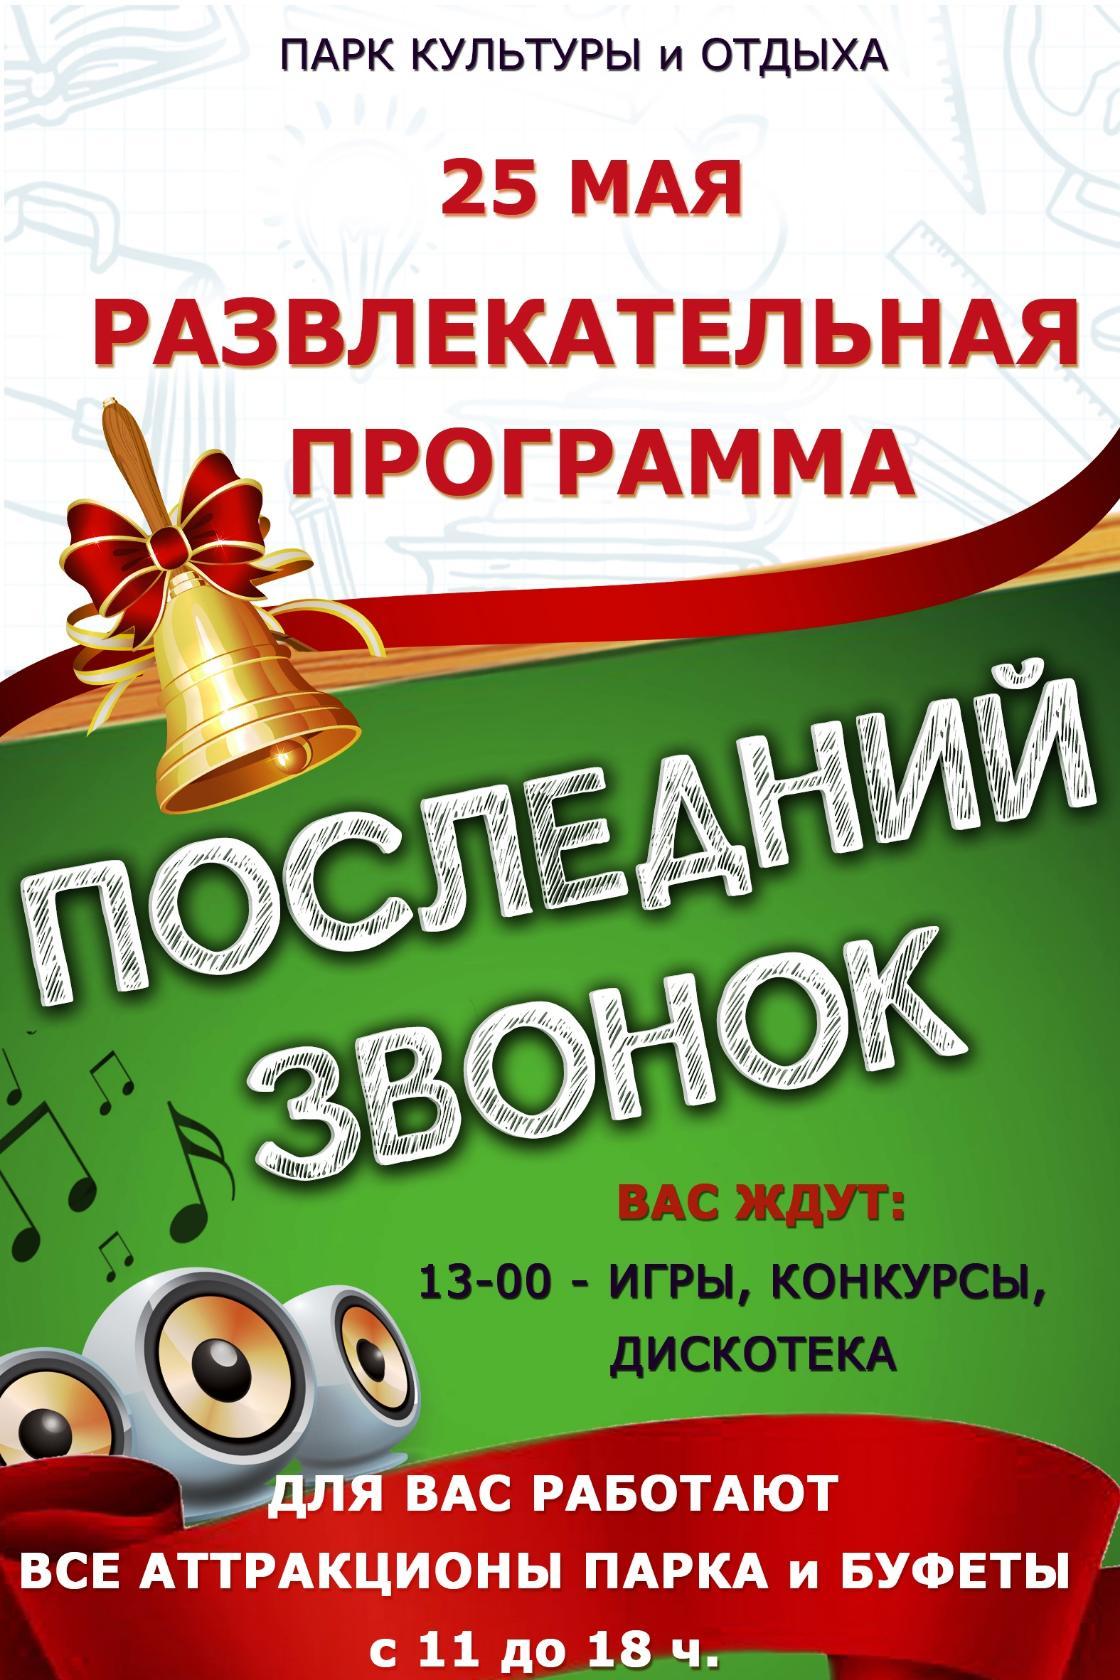 В Новозыбкове по случаю окончания учебного года устроят праздник в городском парке